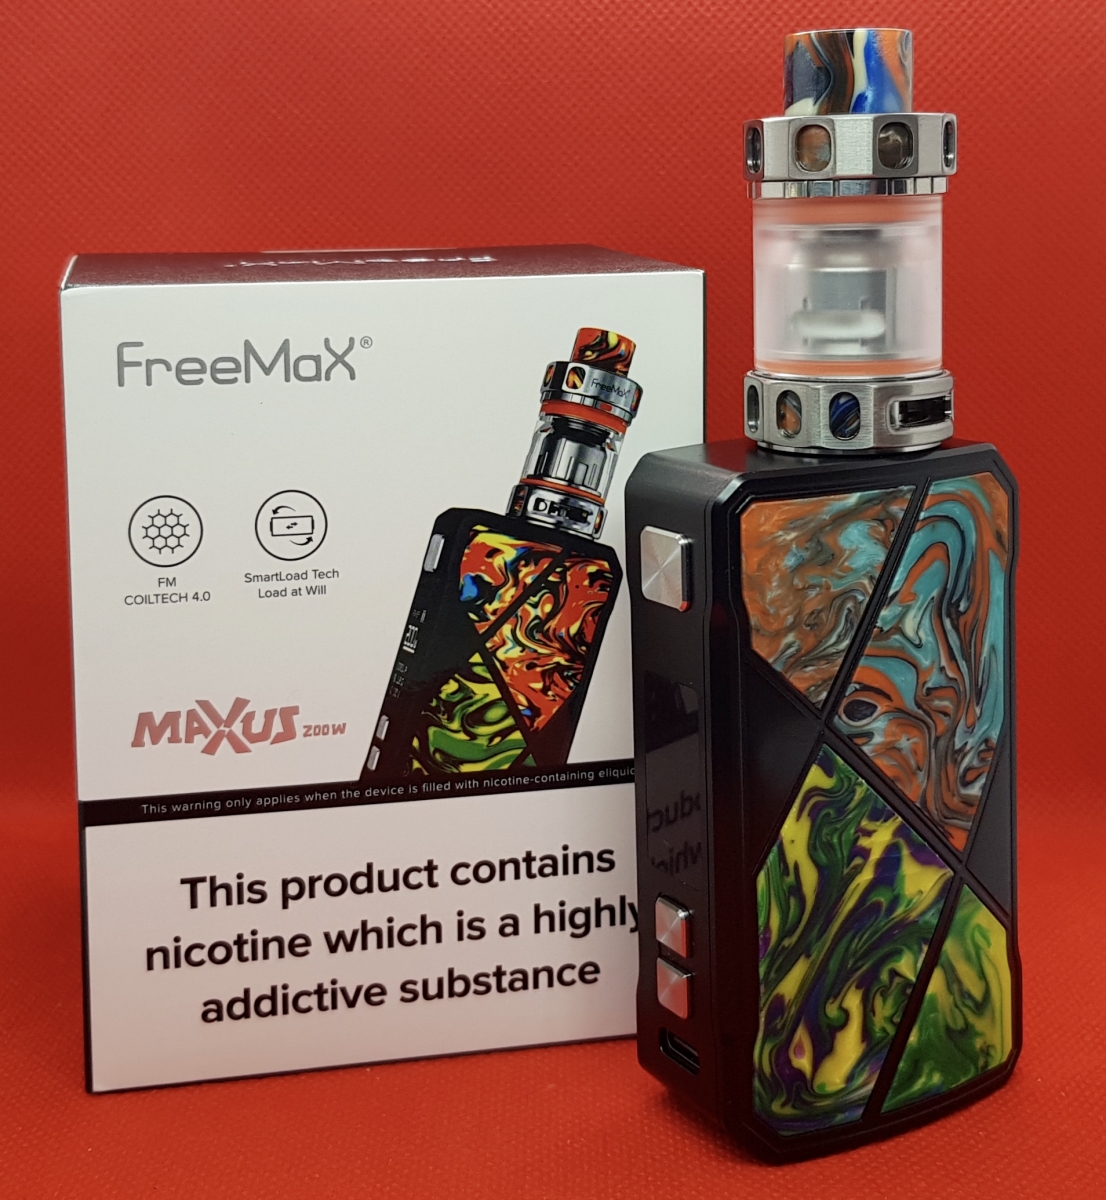 FreeMax Maxus 200w kit and box